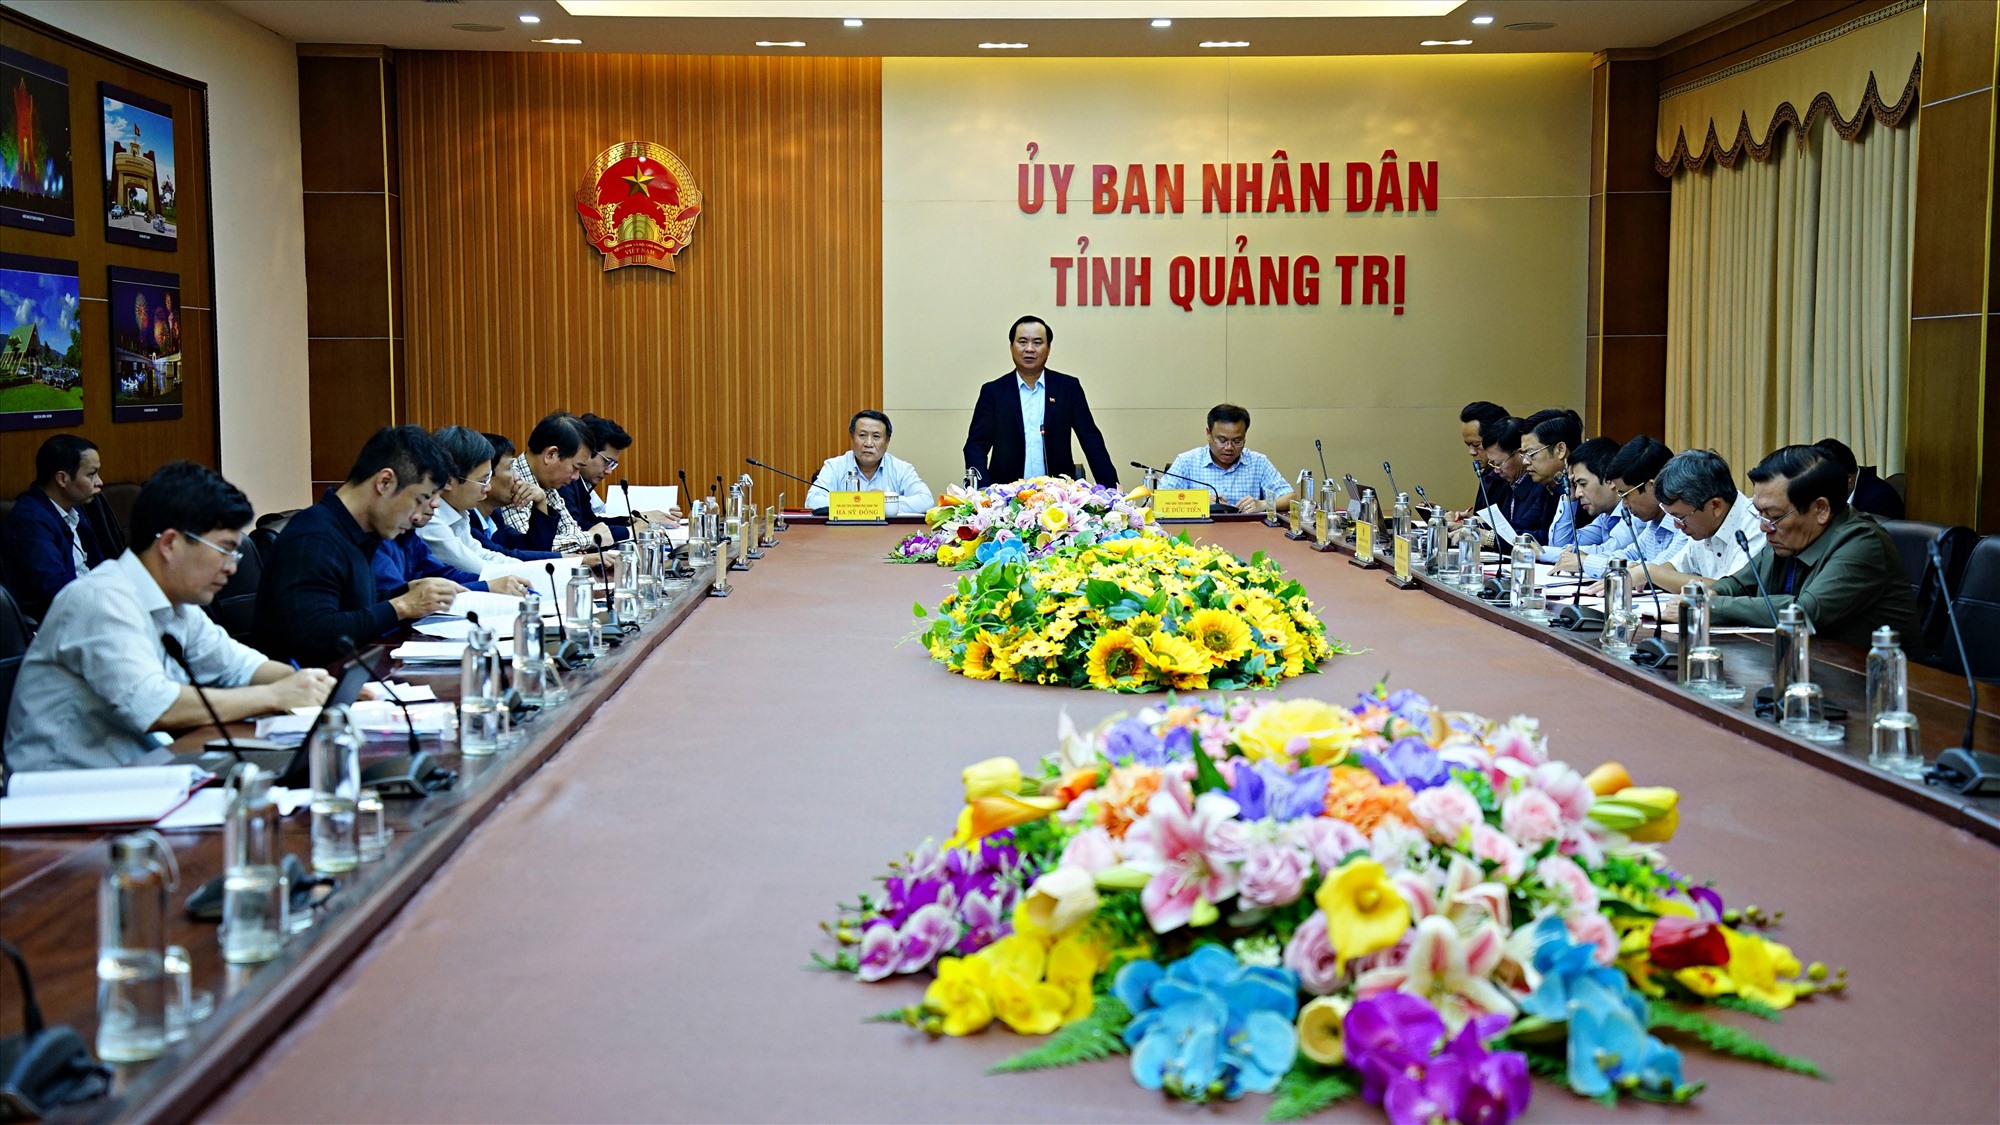 Chủ tịch UBND tỉnh Võ Văn Hưng kết luận cuộc họp - Ảnh: L.A